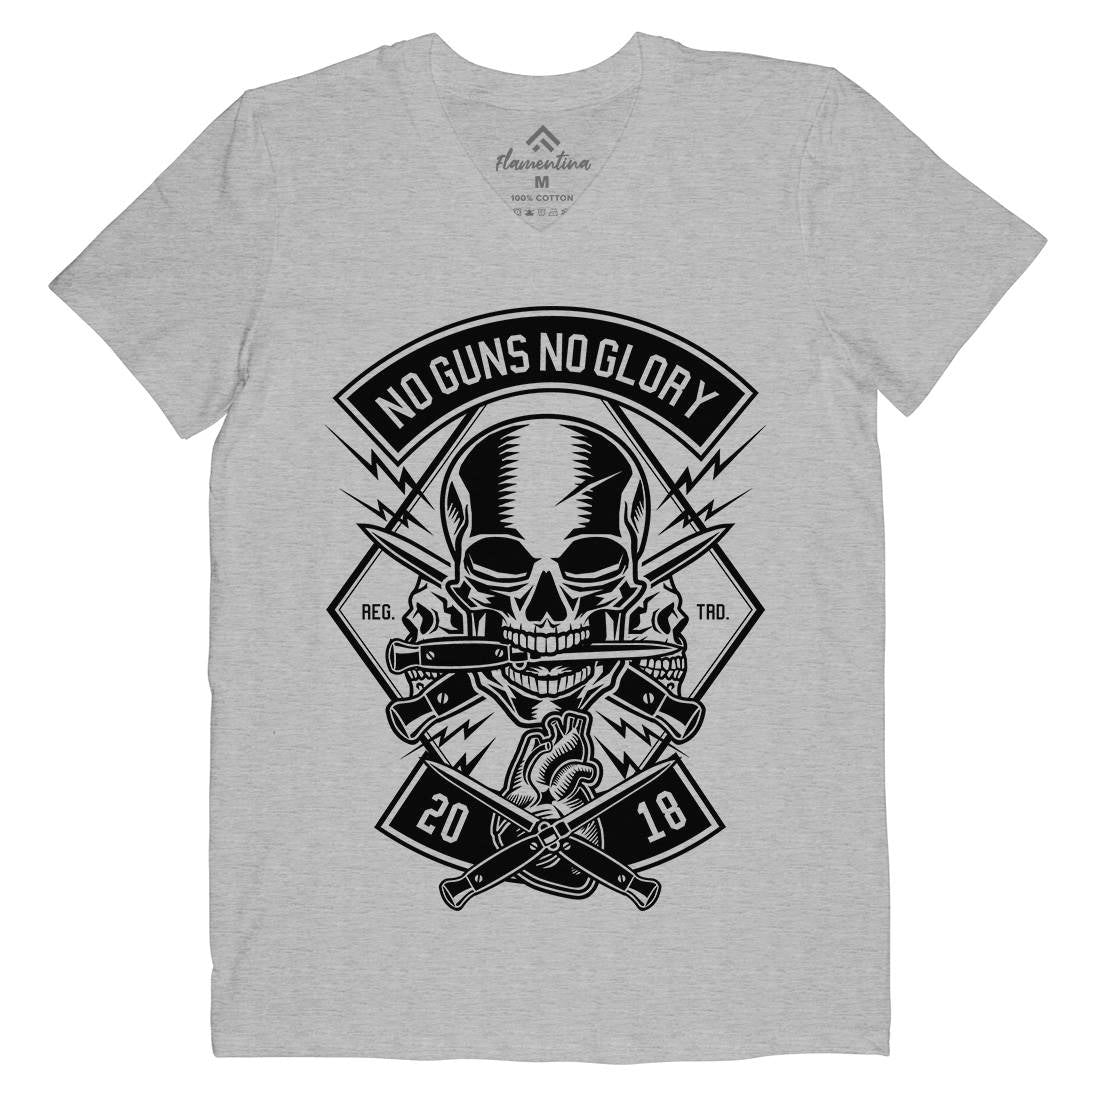 No Guns No Glory Mens V-Neck T-Shirt Army B588